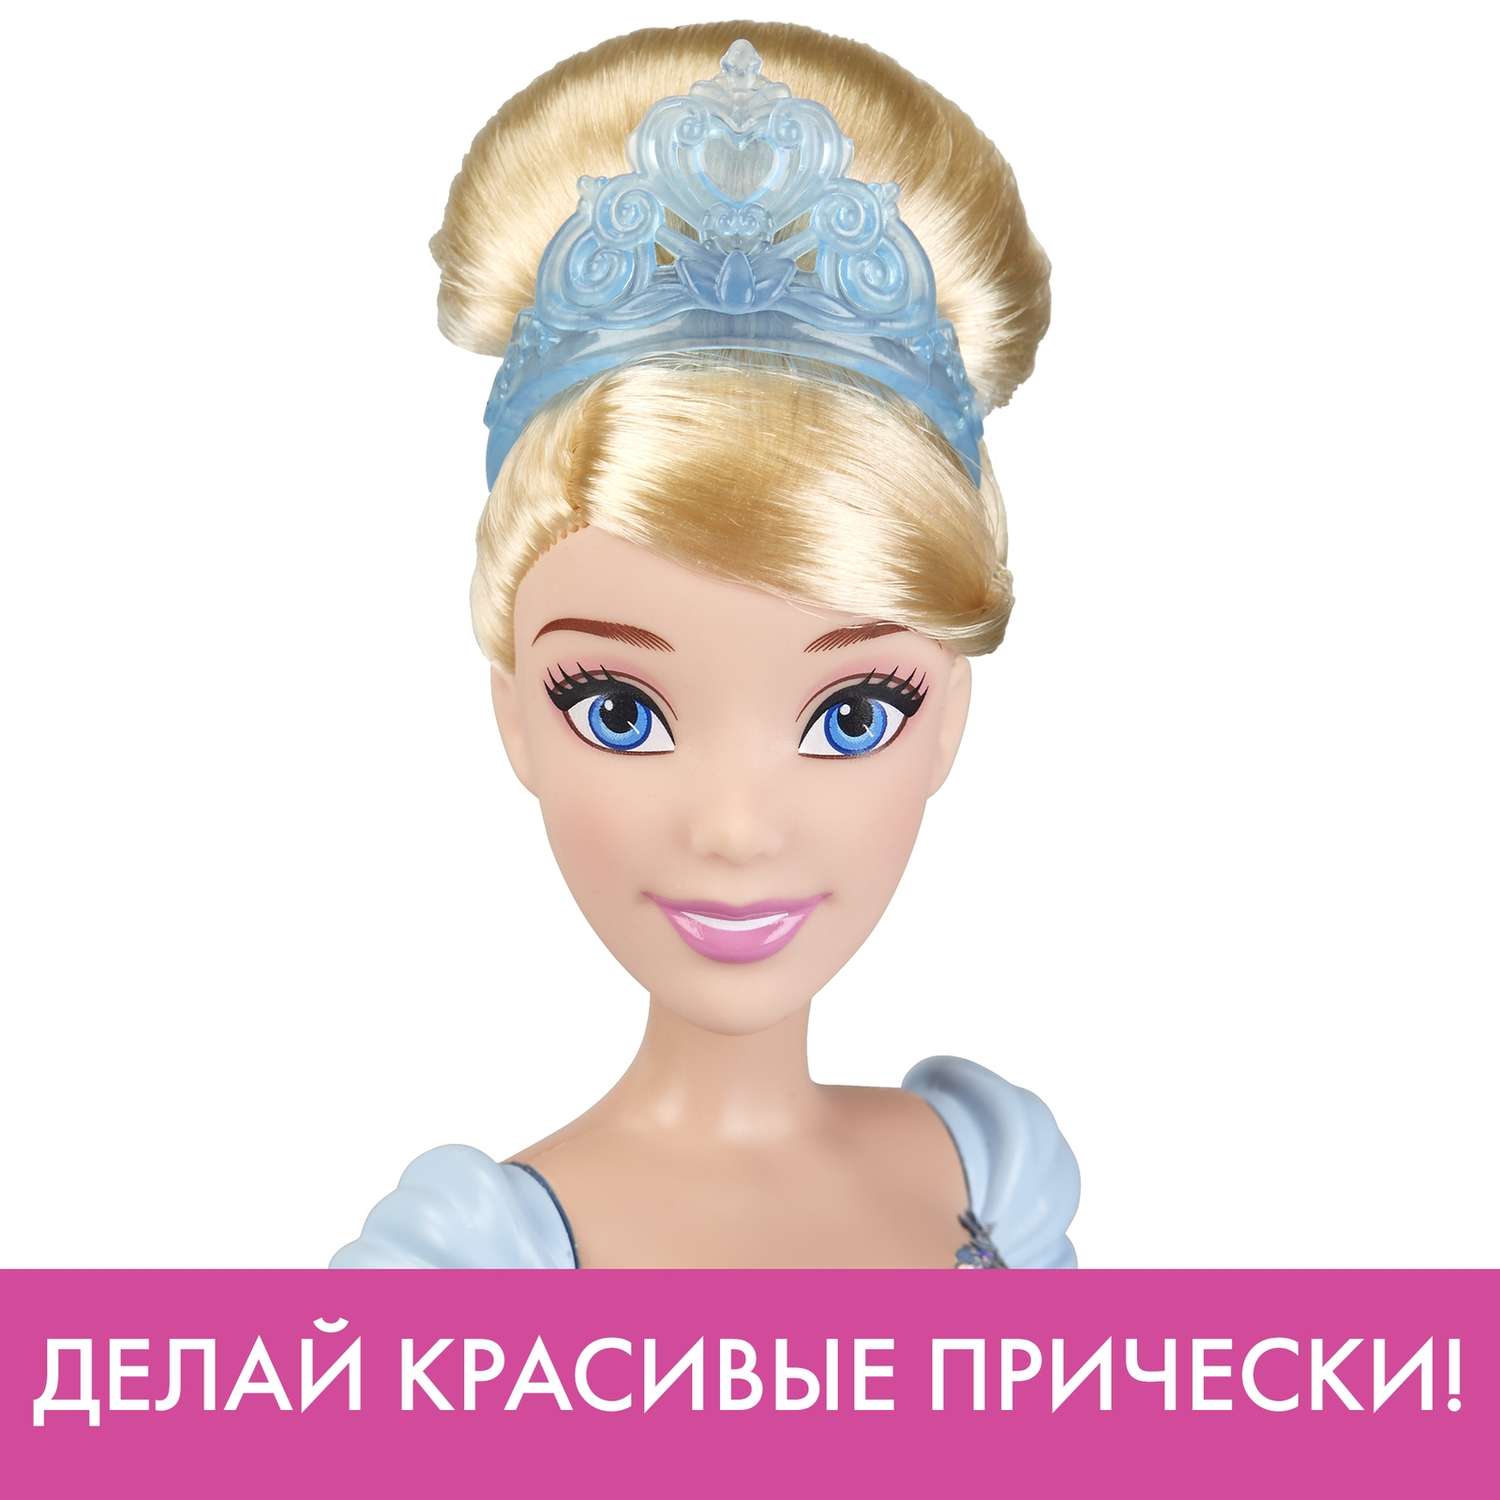 Кукла Disney Princess Hasbro А Золушка E4158ES2 E4158ES2 - фото 14